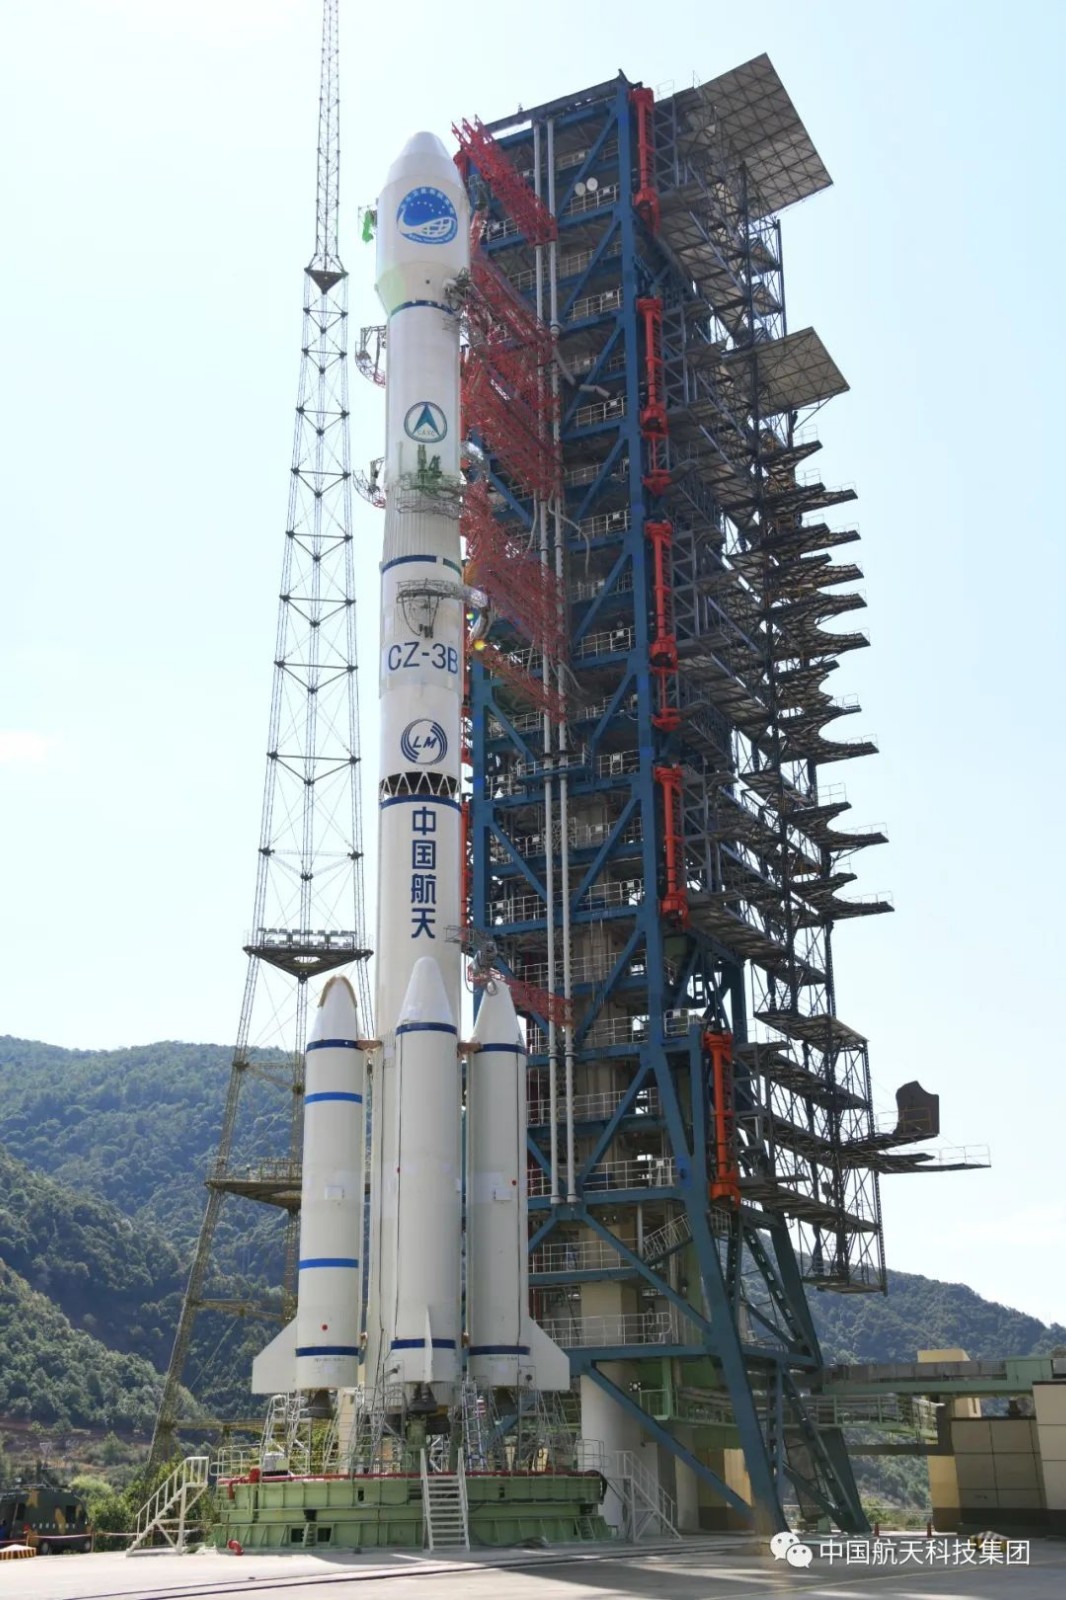 中国发射第56颗北斗导航卫星 系北斗三号工程首颗备份卫星_图1-5